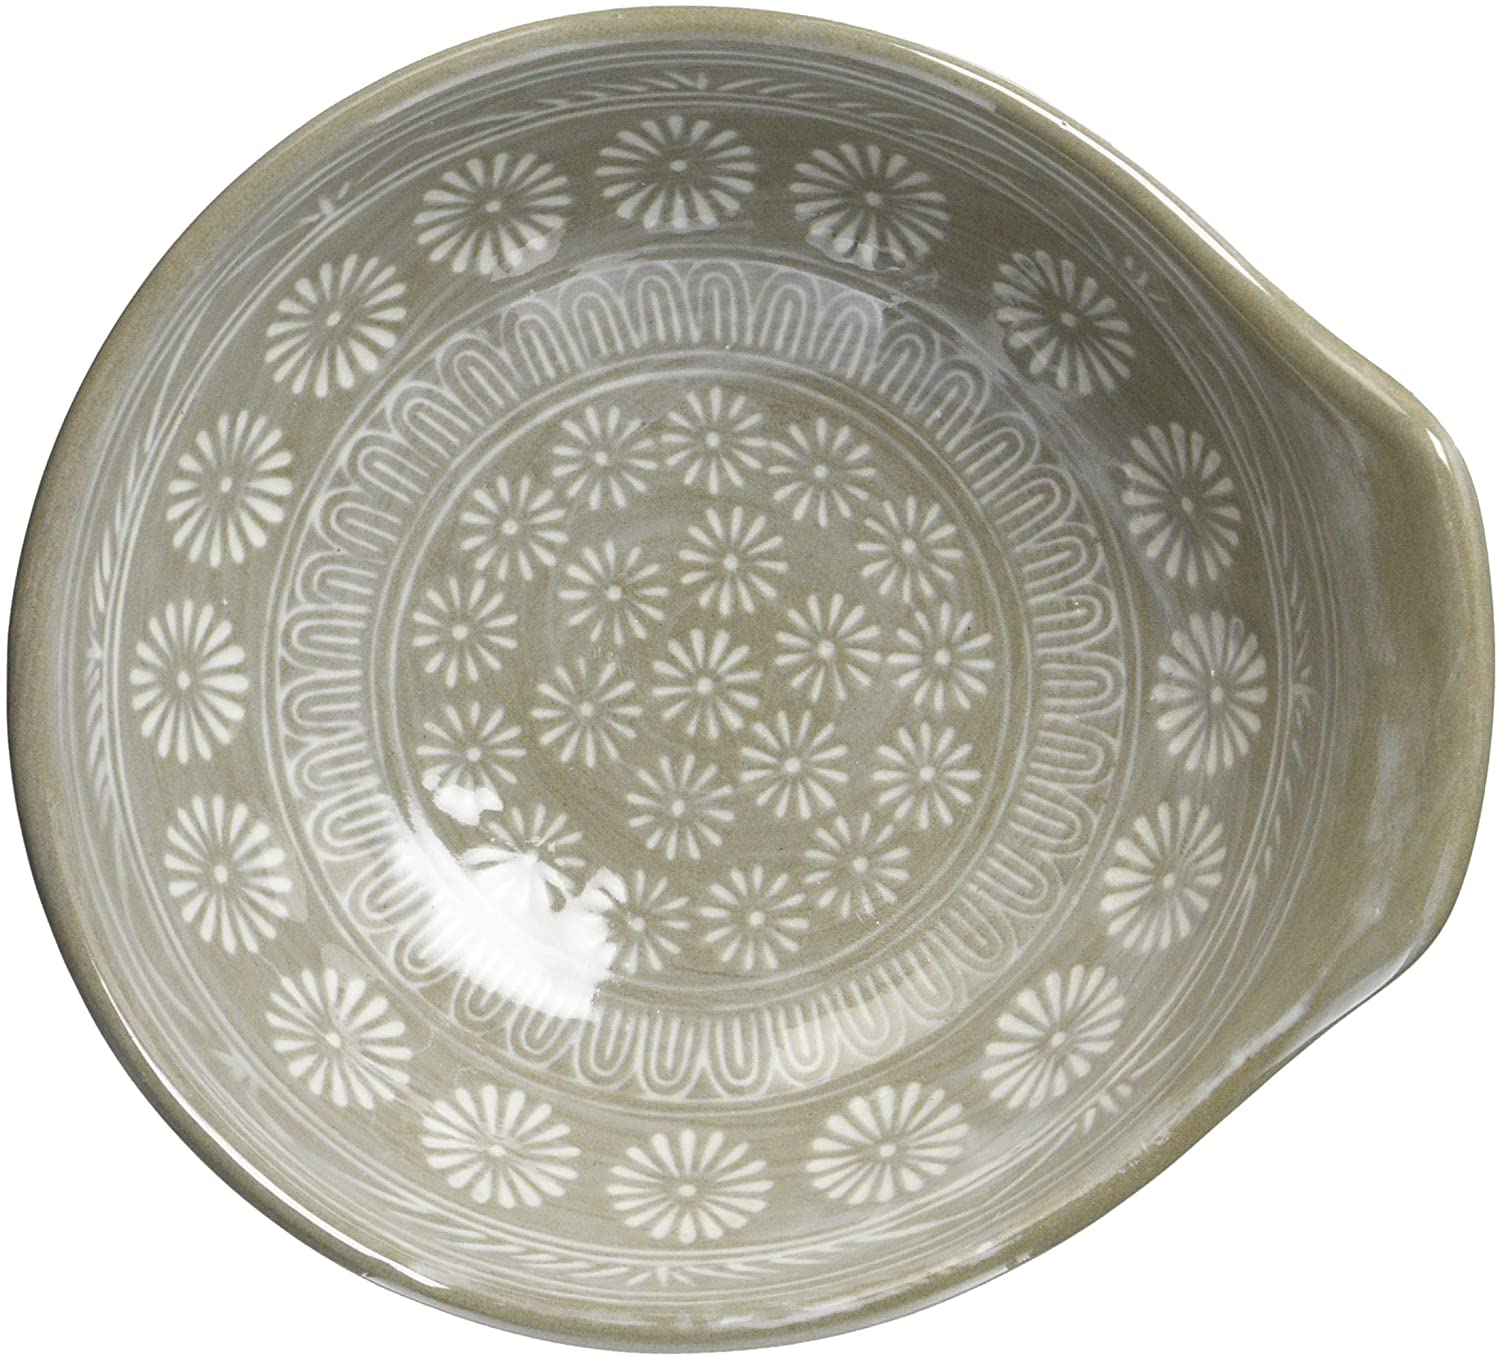 「銀峯陶器」は伝統的な模様が特徴